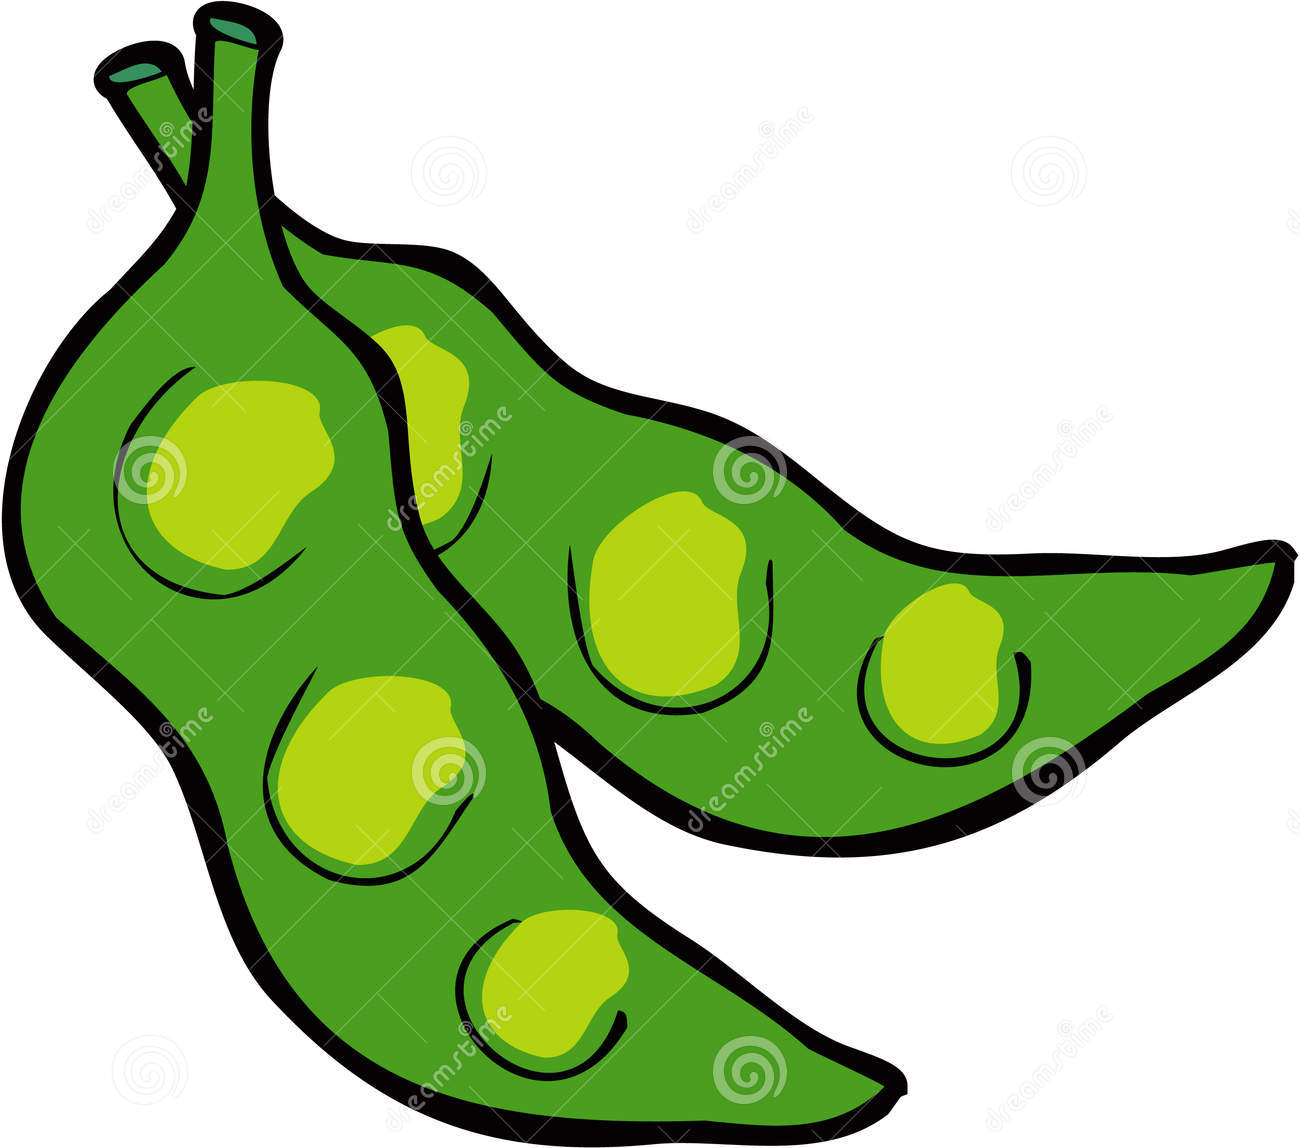 Green clip art vector. Beans clipart